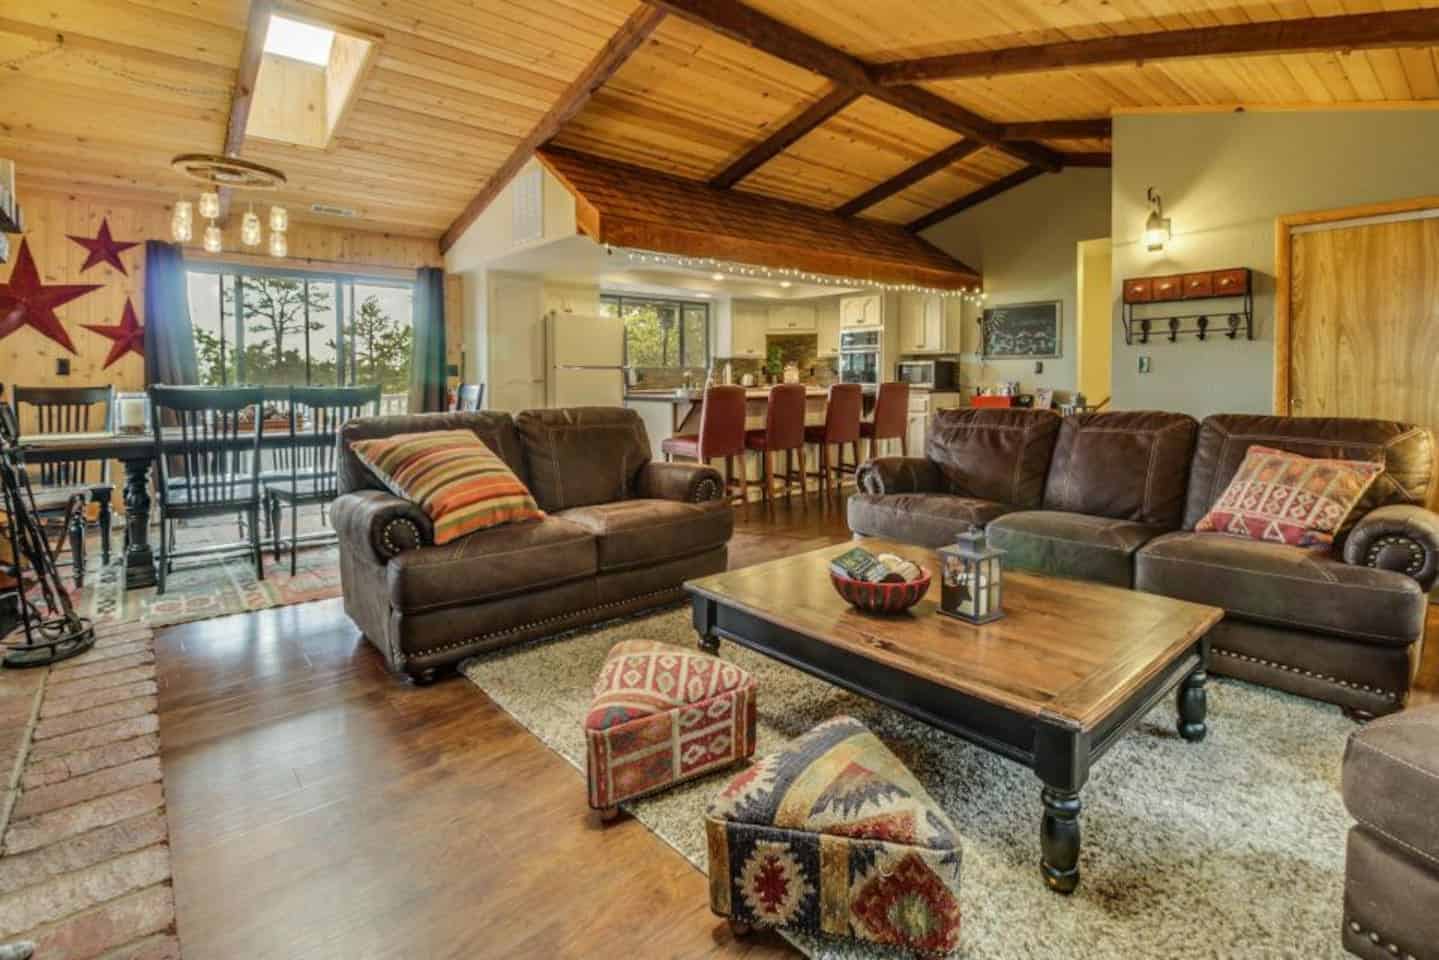 Image of Airbnb rental in Big Bear Lake California